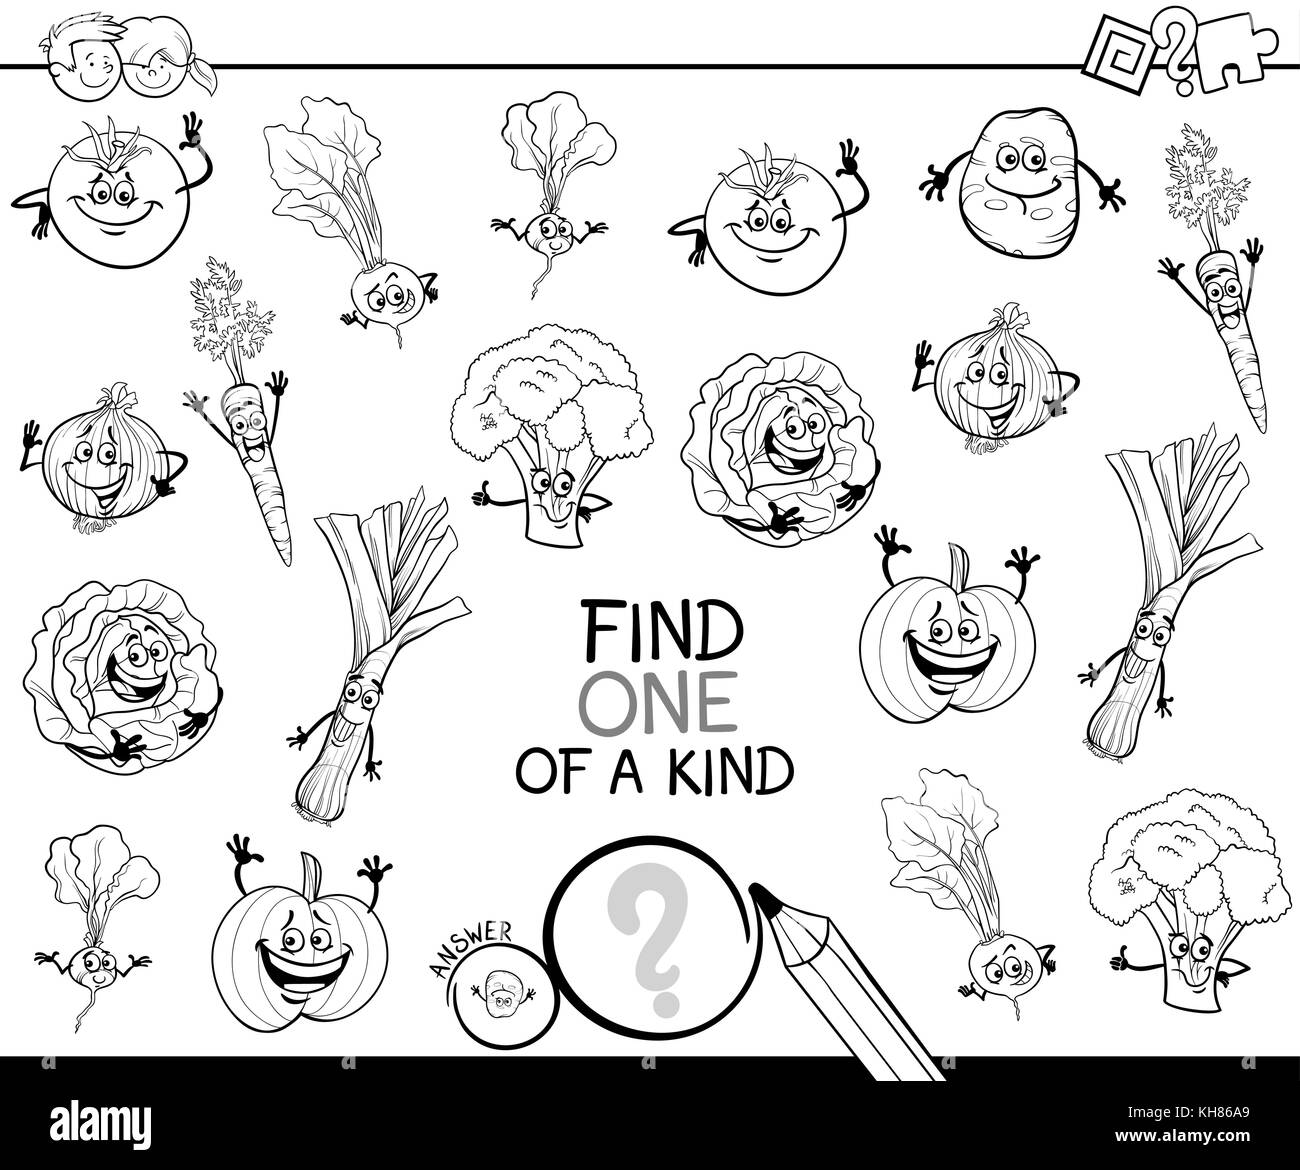 Bianco e nero cartoon illustrazione di trovare un tipo di attività educativa gioco per bambini con verdure caratteri comico libro da colorare Illustrazione Vettoriale